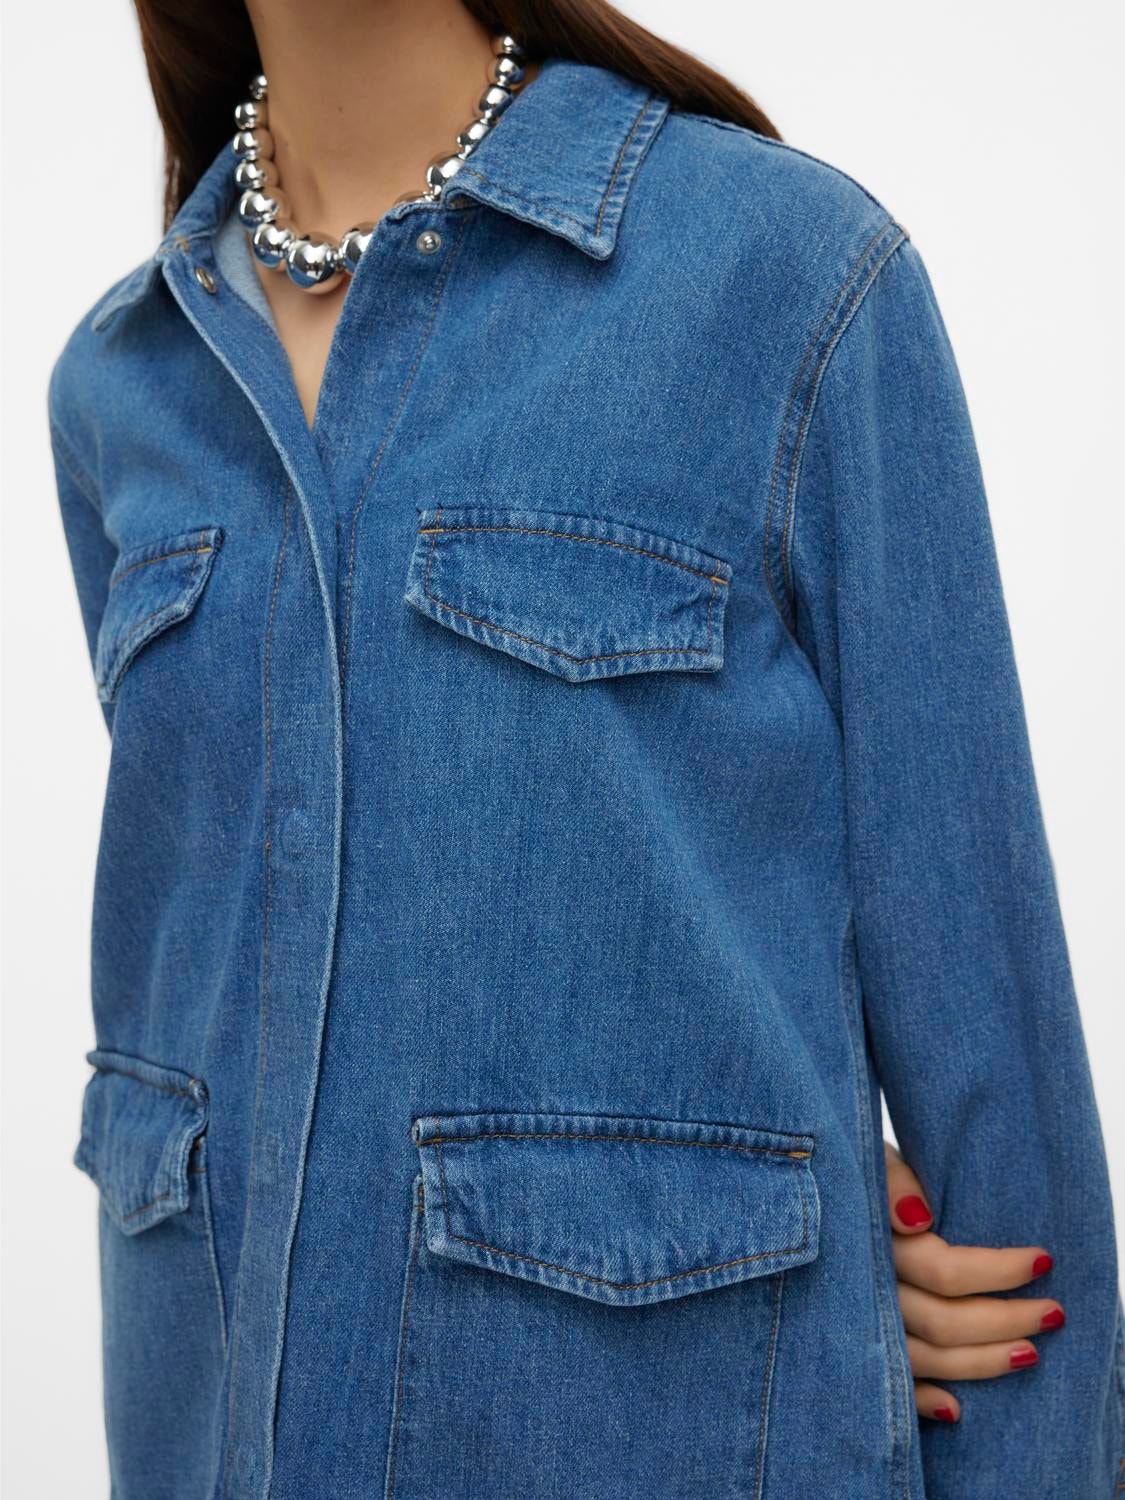 Vero Moda VMMARIA Jacket -Medium Blue Denim - 10301664